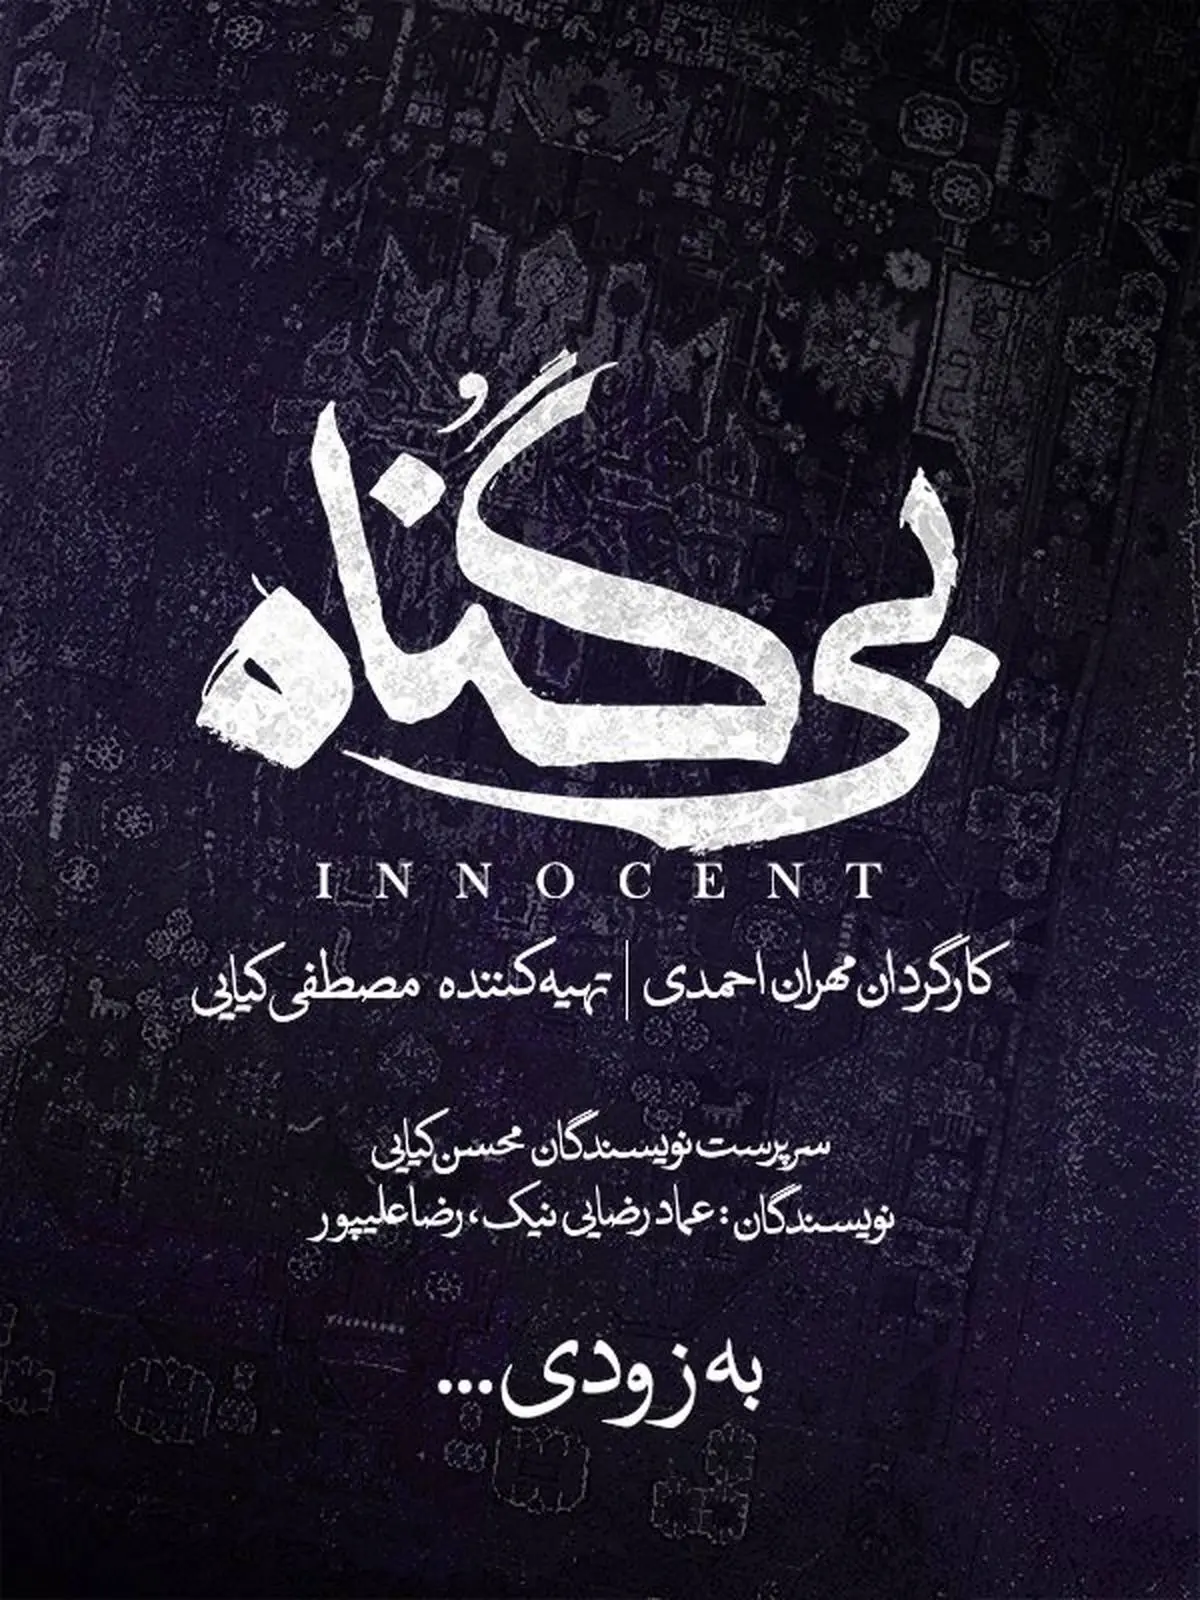 مهران احمدی با «بی‌گناه» به شبکه‌نمایش خانگی می‌آید/ رونمایی از لوگو «بی‌گناه»

